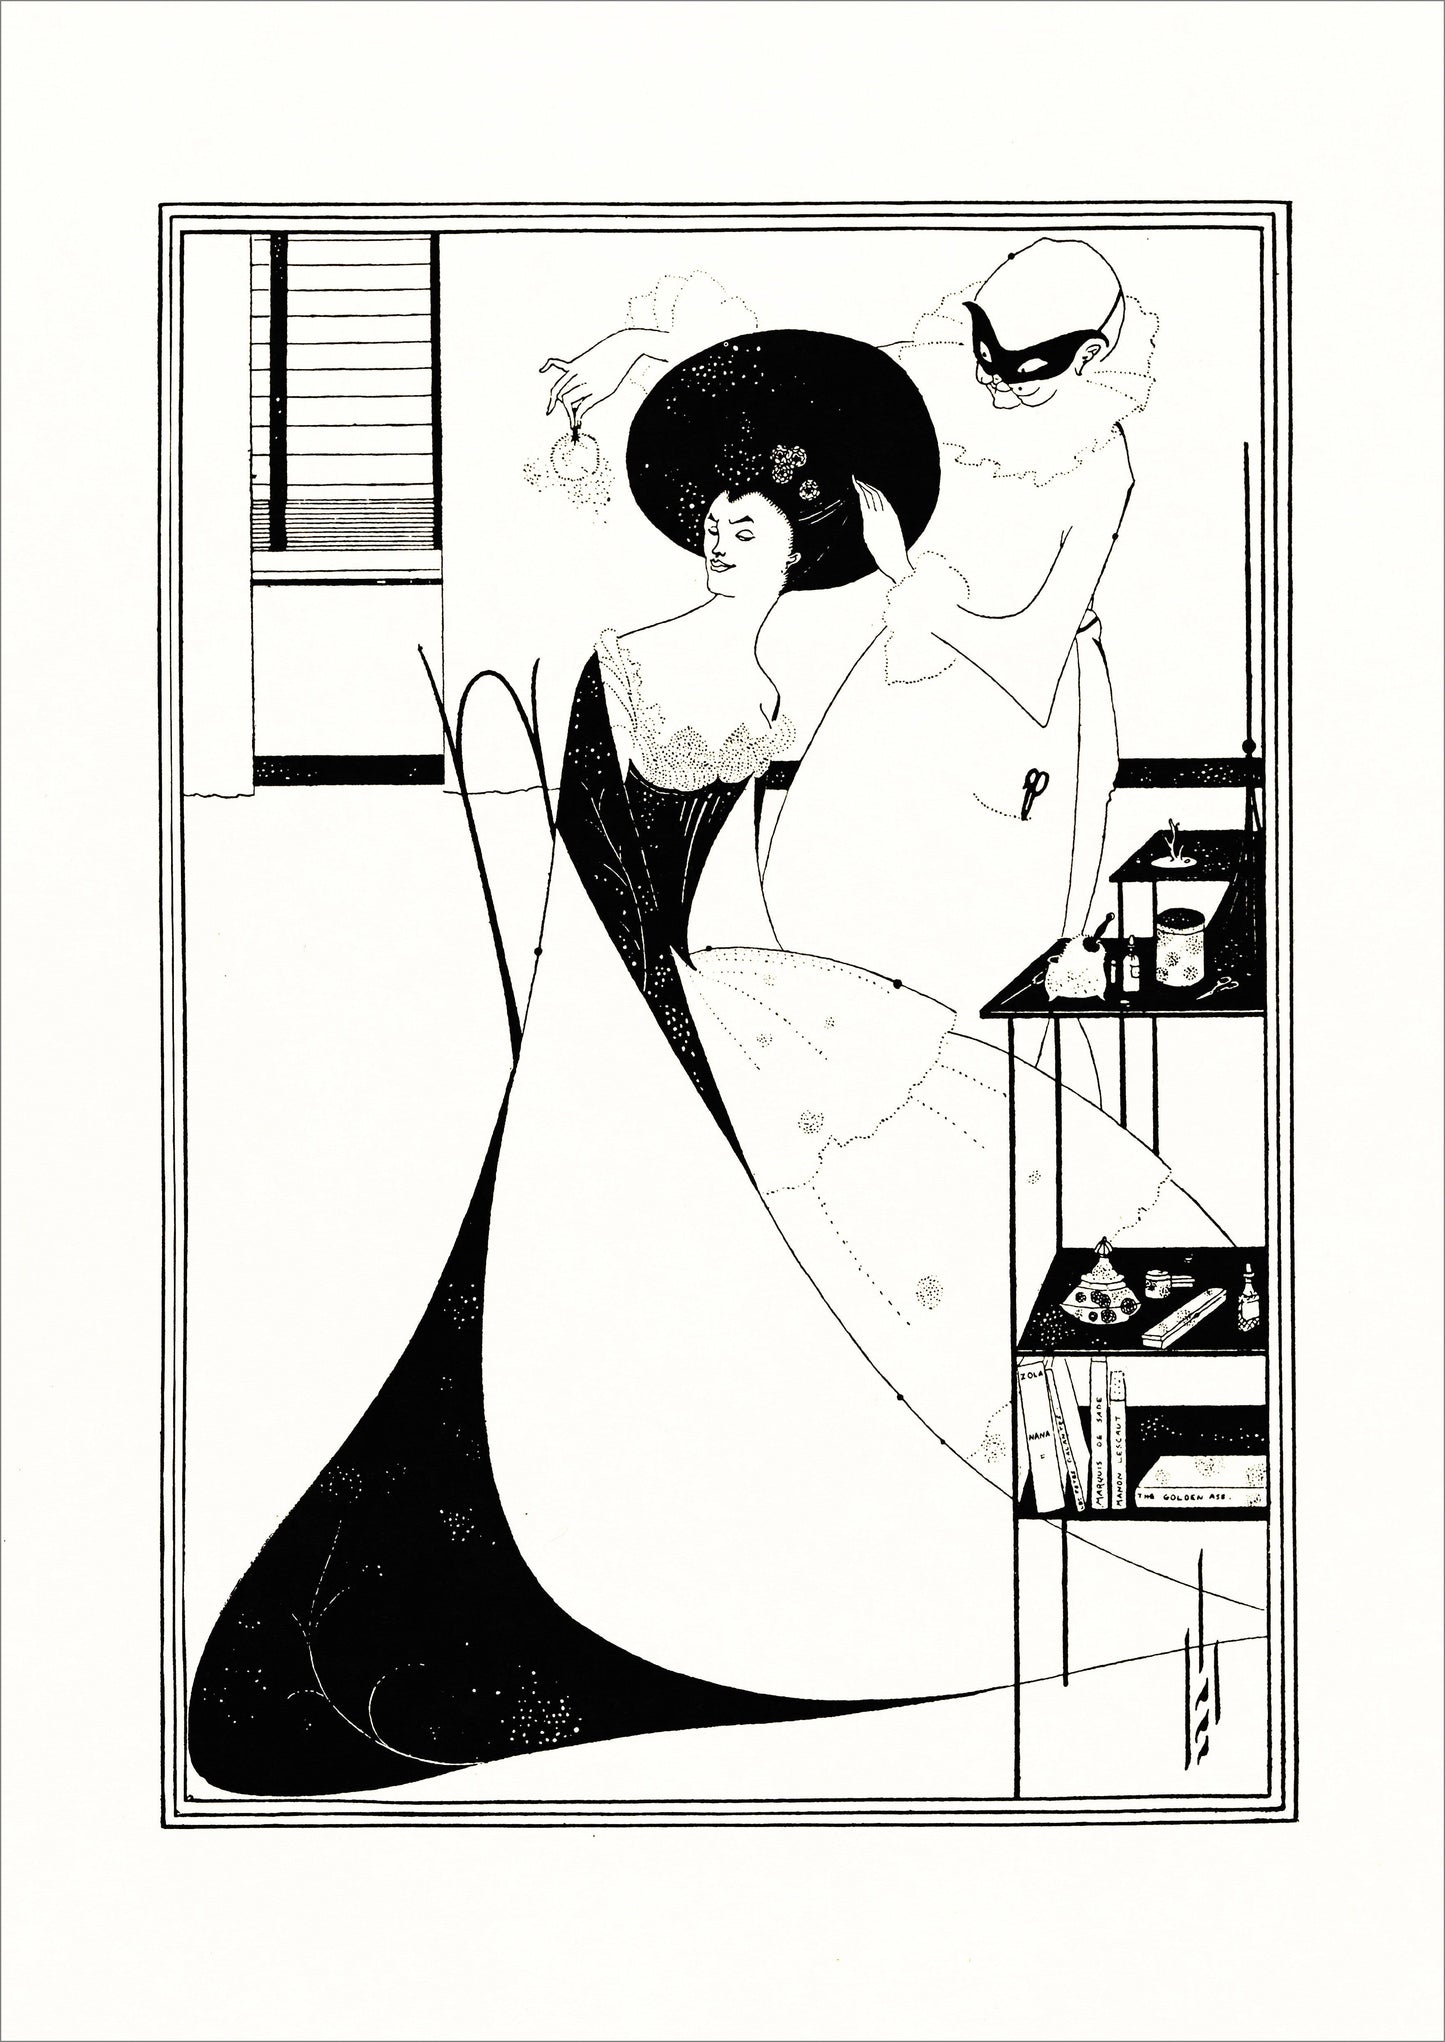 AUBREY BEARDSLEY: Salomé Illustration Art Prints - Pimlico Prints